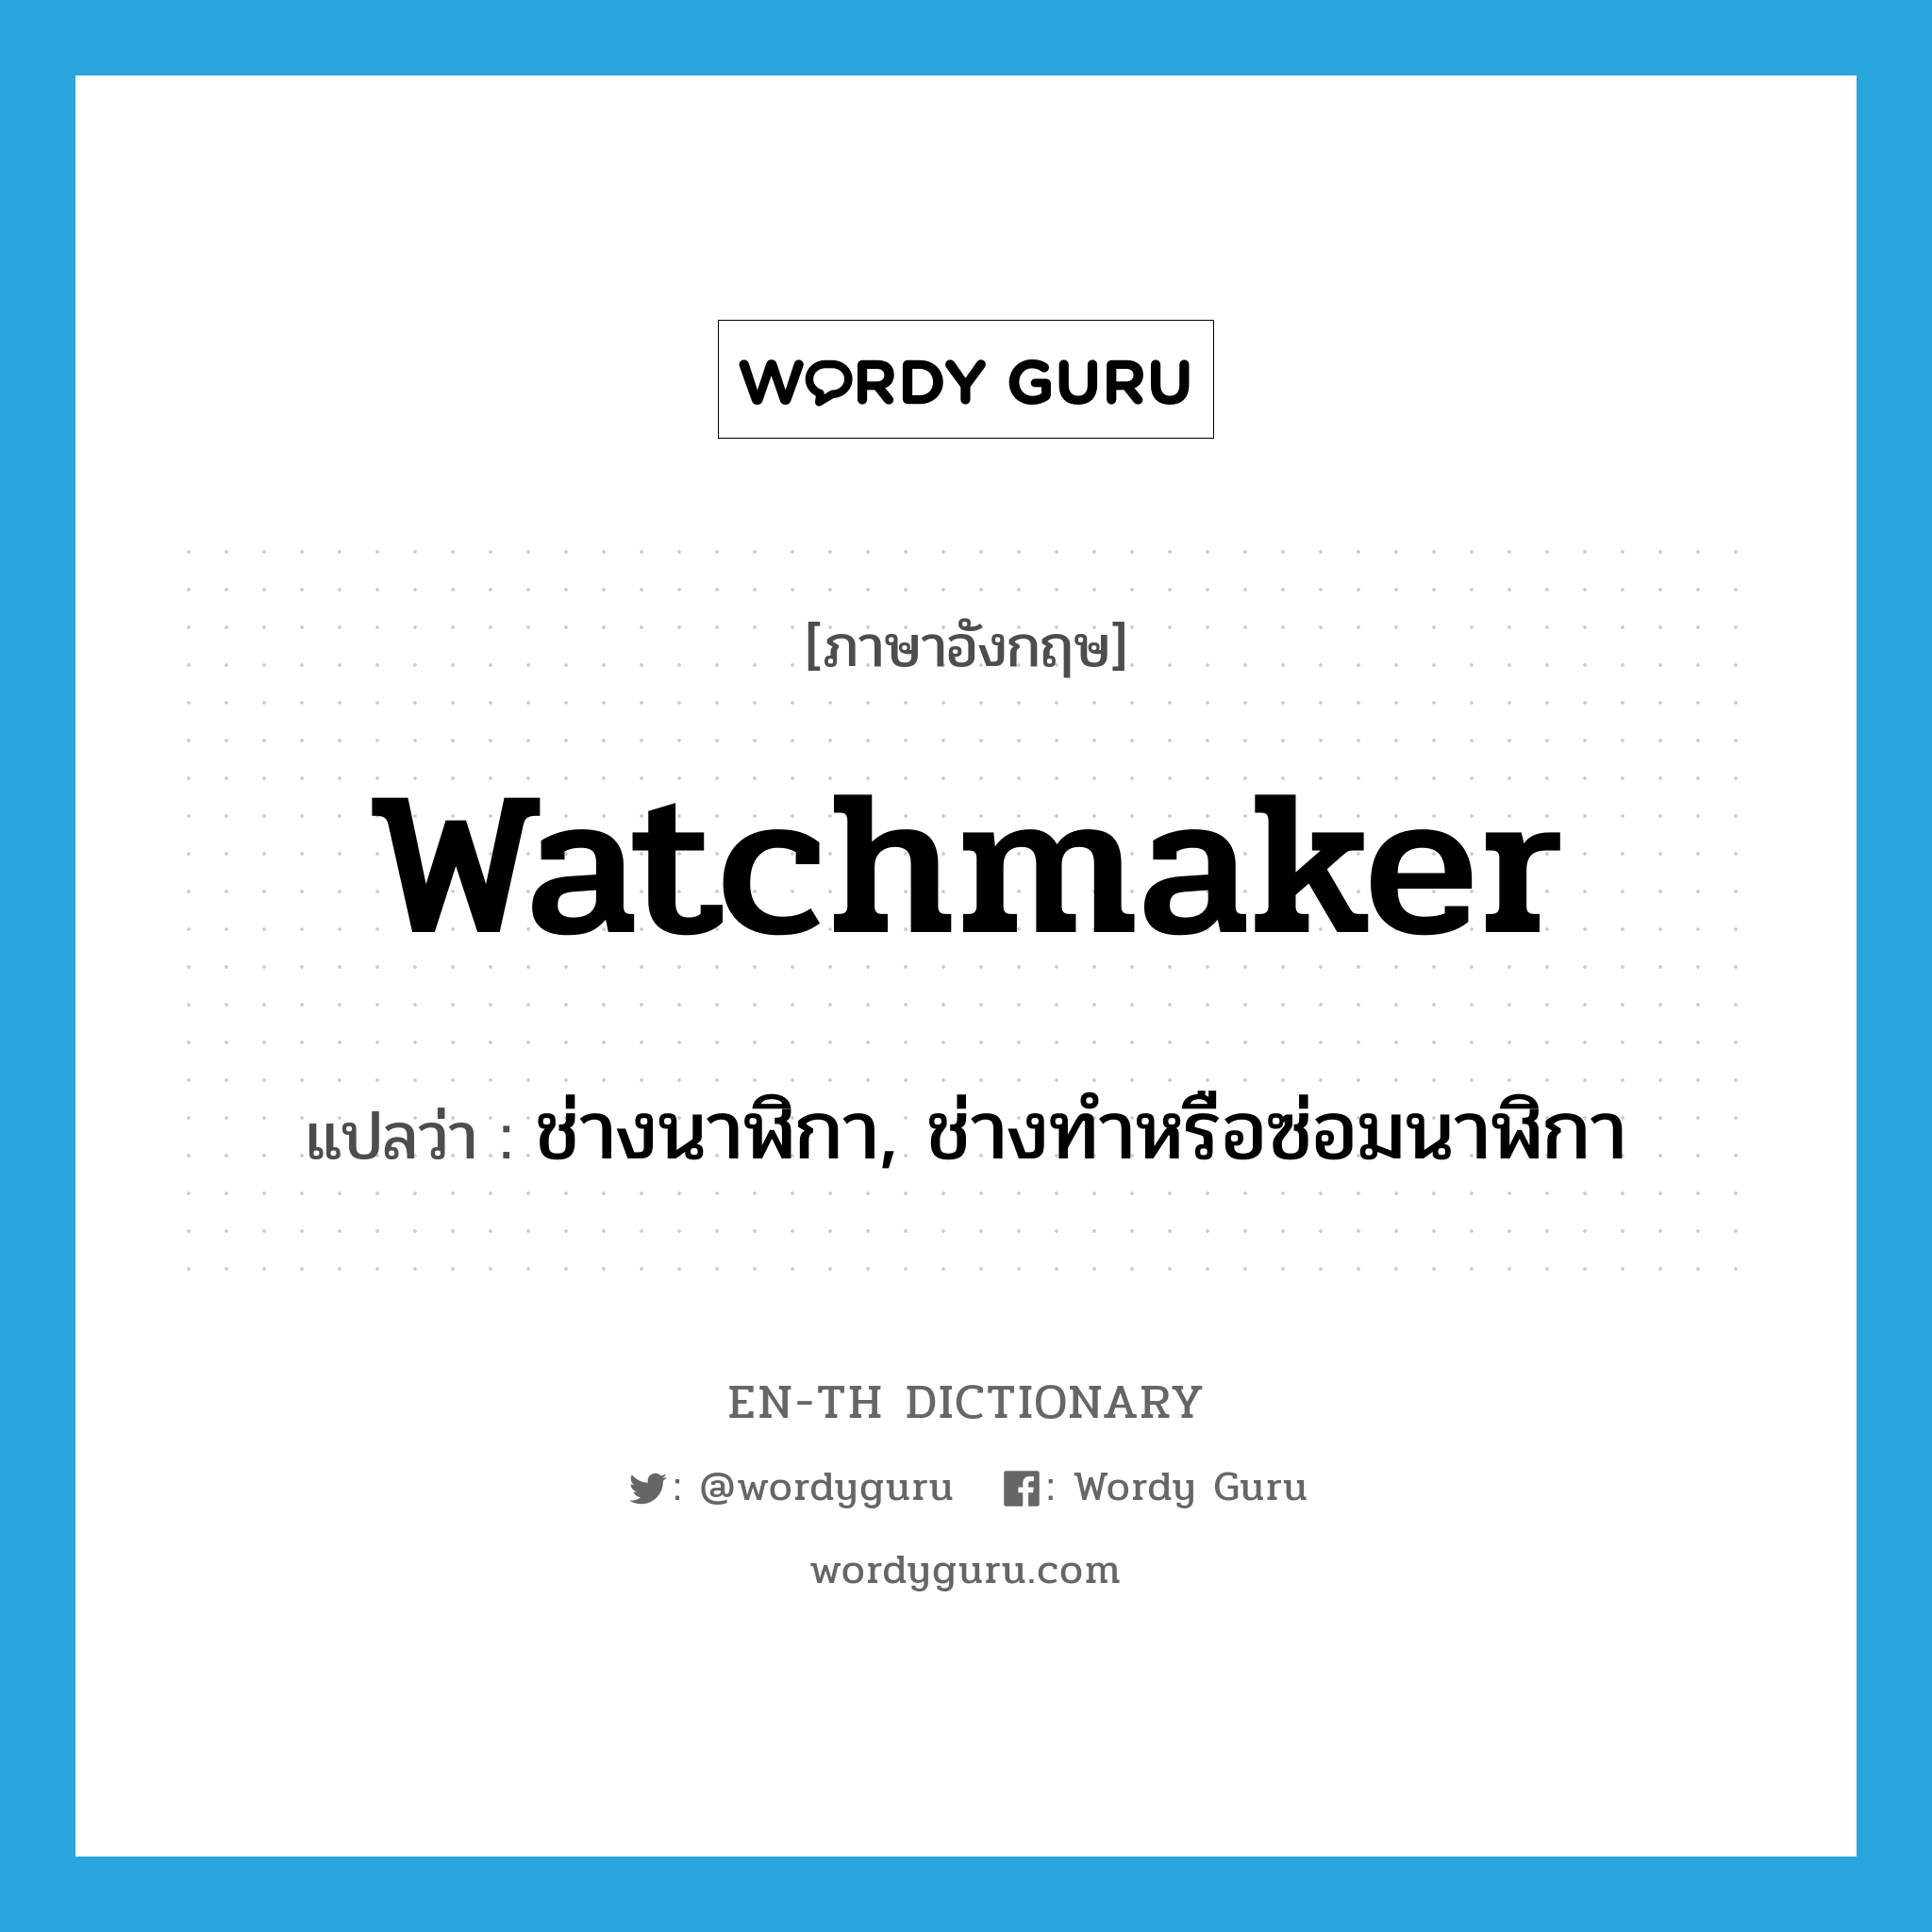 ช่างนาฬิกา, ช่างทำหรือซ่อมนาฬิกา ภาษาอังกฤษ?, คำศัพท์ภาษาอังกฤษ ช่างนาฬิกา, ช่างทำหรือซ่อมนาฬิกา แปลว่า watchmaker ประเภท N หมวด N